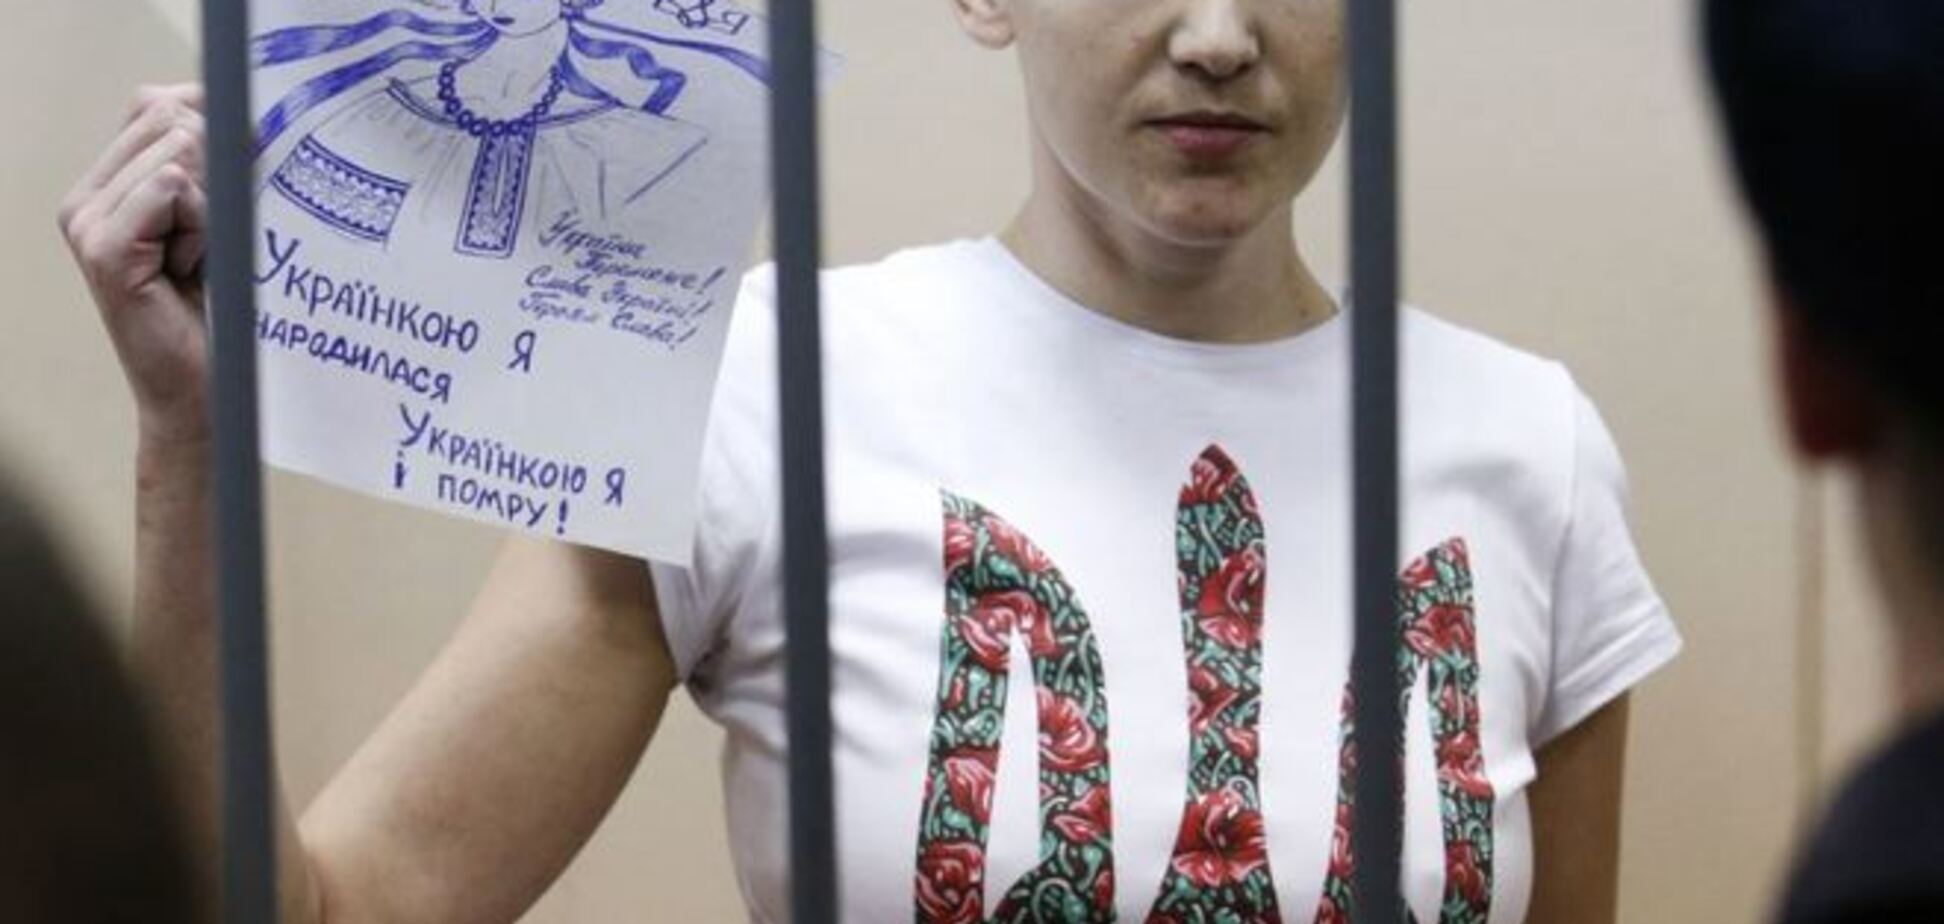 Порошенко: Украина призвала Россию освободить Савченко и всех заложников